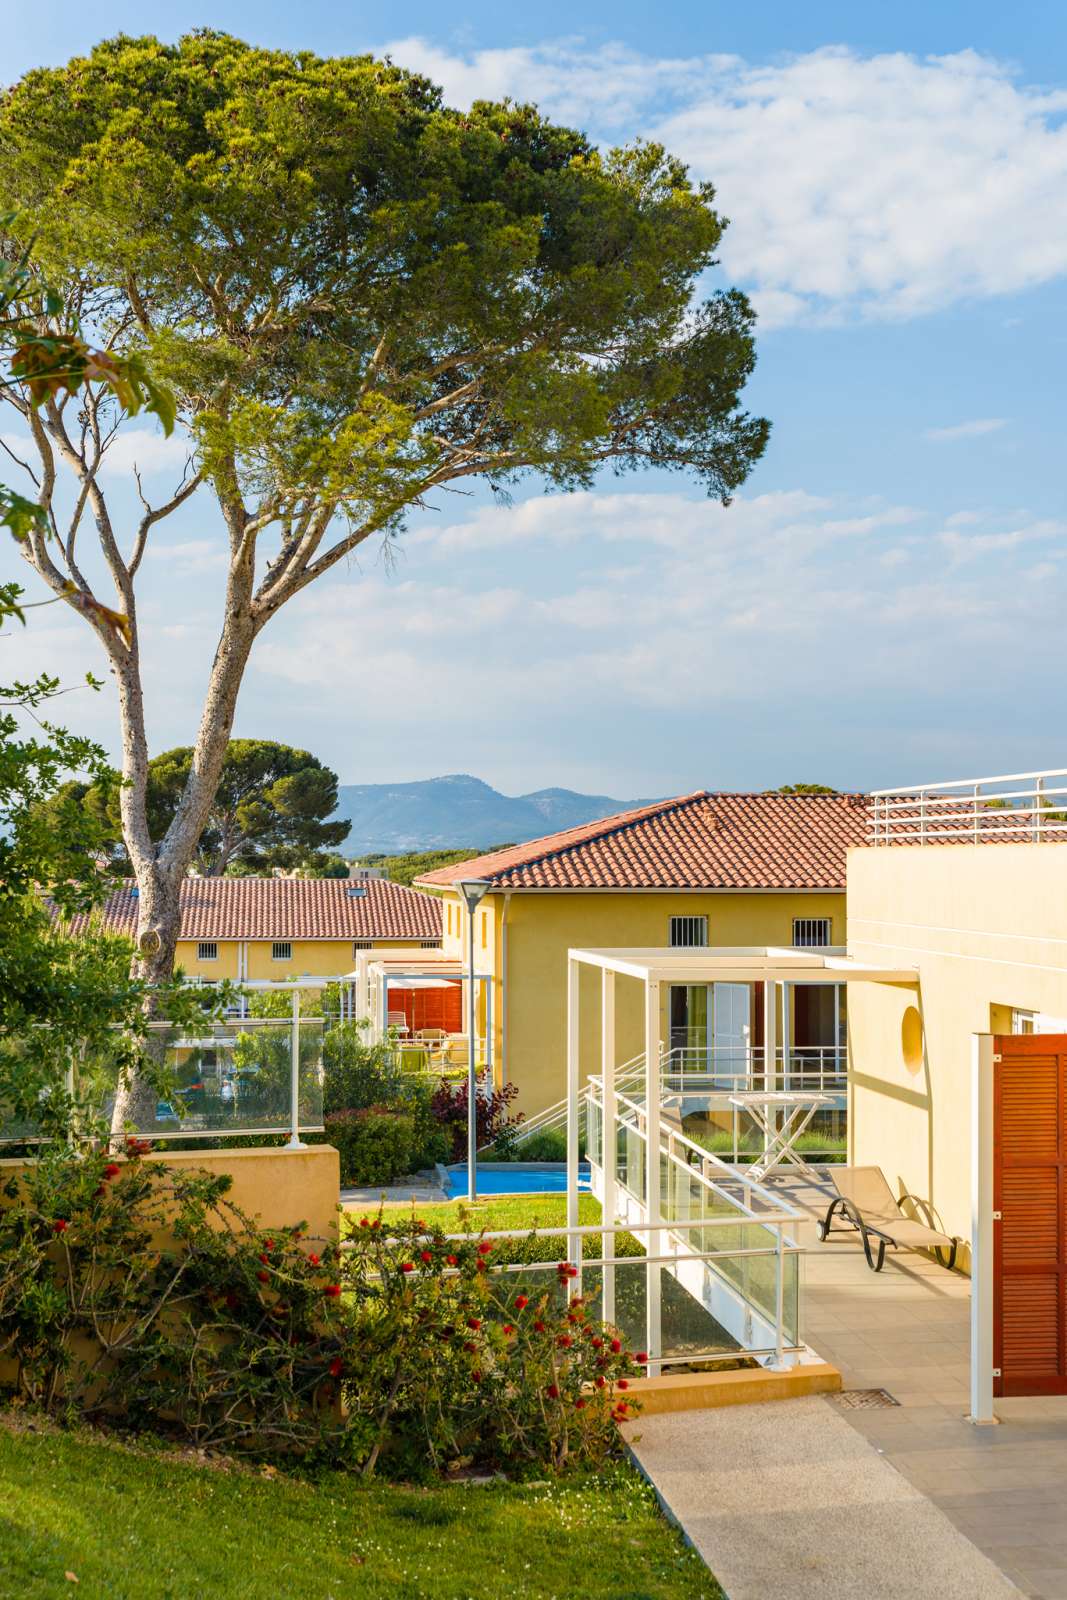 France - Côte d'Azur - Six Fours les Plages - Résidence Lagrange Vacances Les Terrasses des Embiez 4*